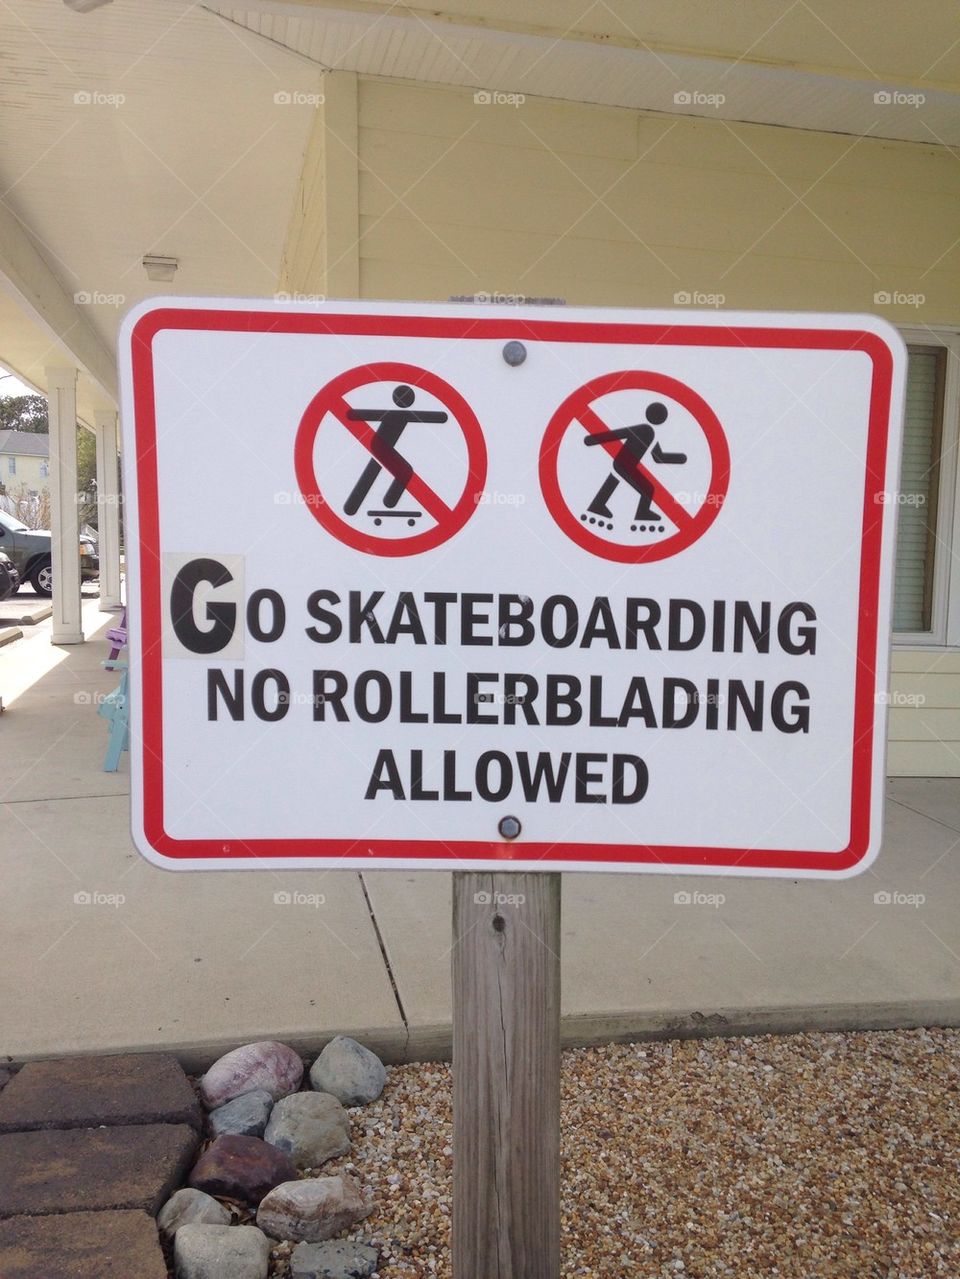 Go skateboarding